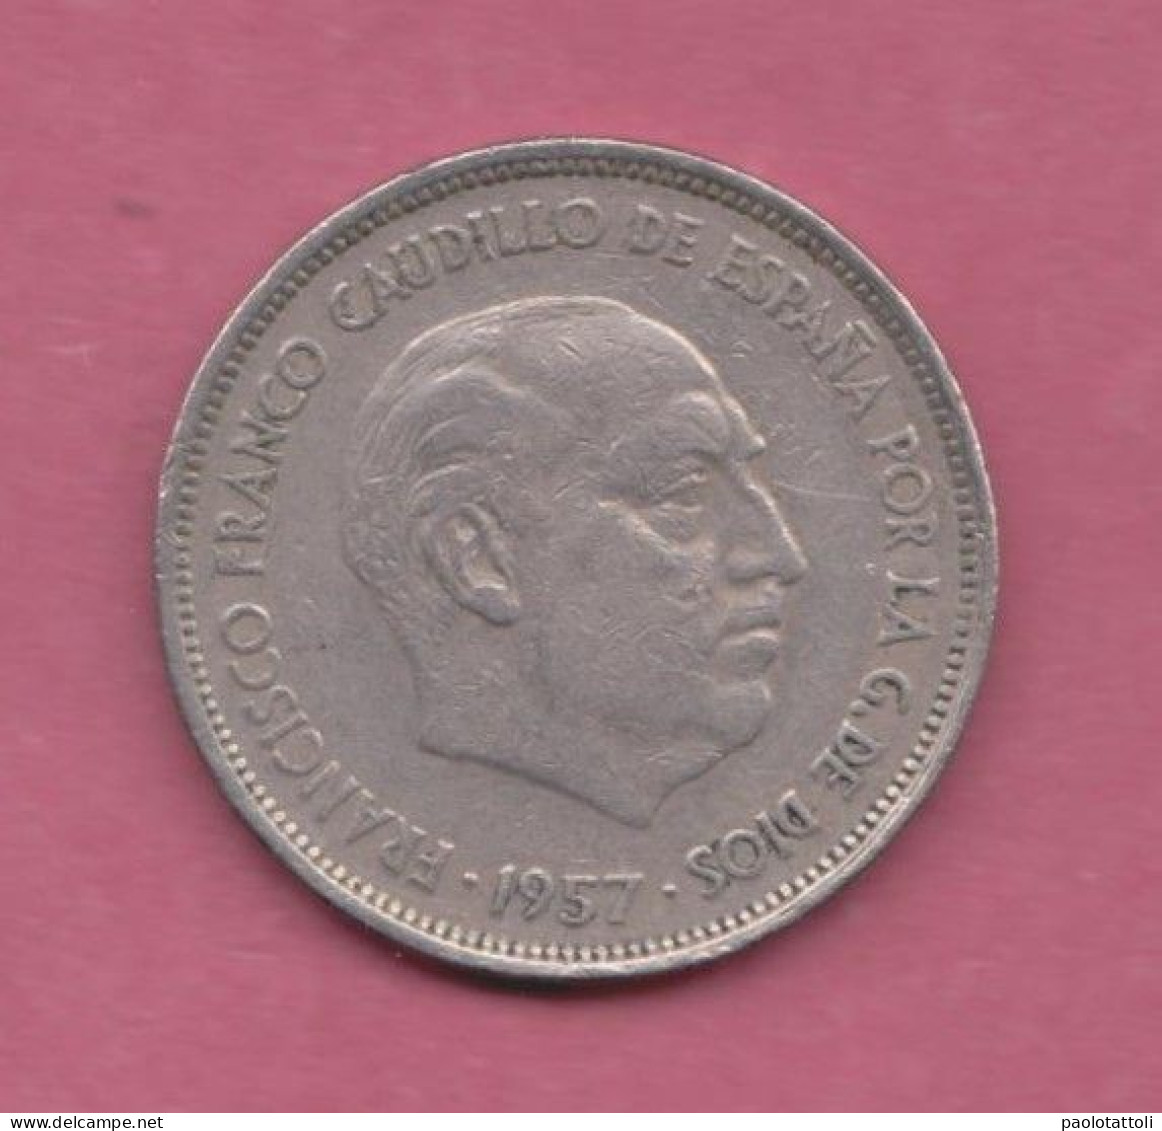 Spagna, Spain, 1957- 25 Pesetas- Copper-nickel - Obverse Head Of Francisco Franco Facing Right. Rverse Coat Of Arms - 25 Pesetas